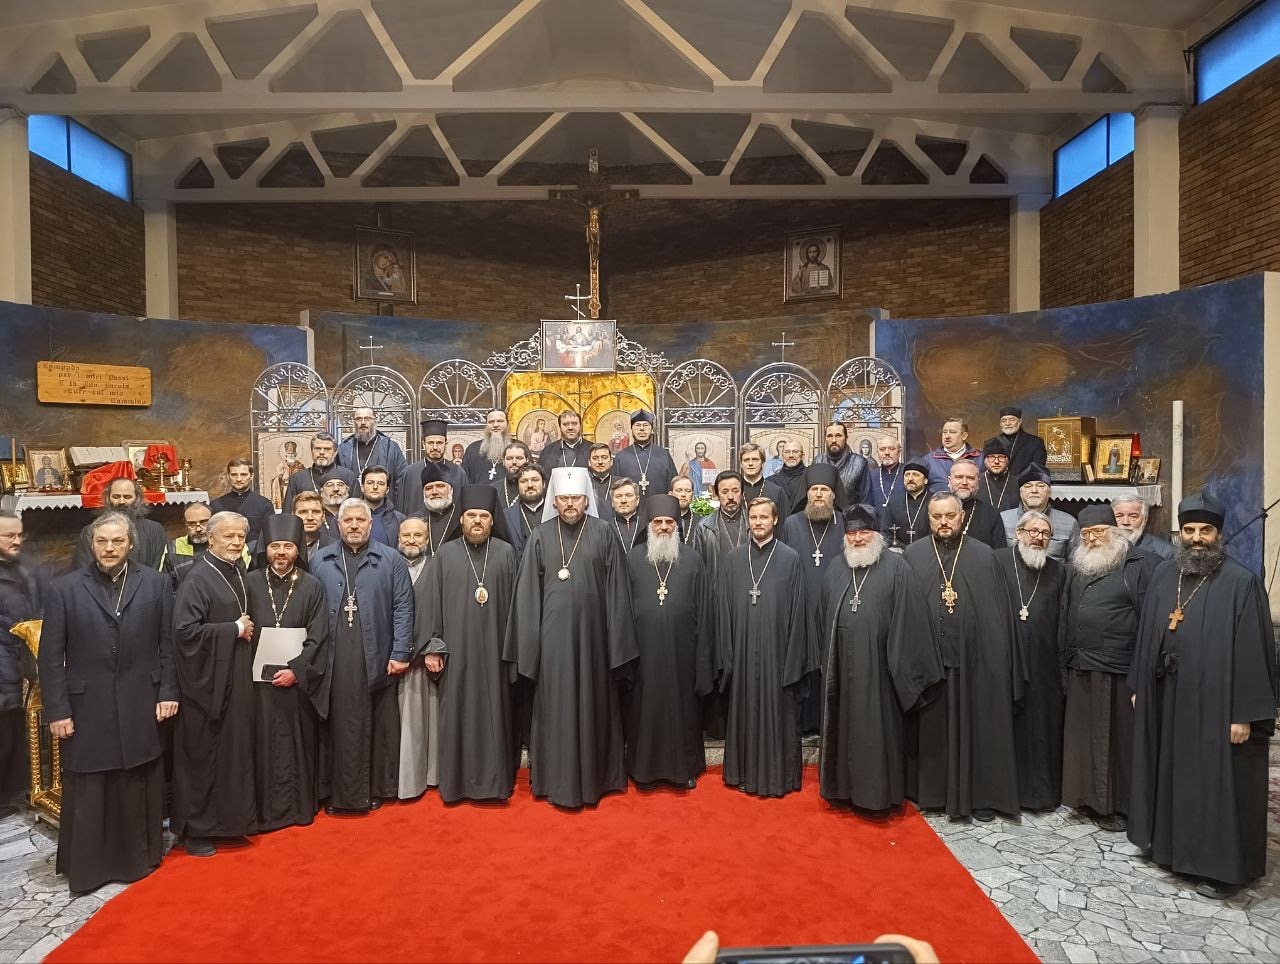 Réunion du clergé de l'Administration des paroisses du Patriarcat de Moscou en Italie